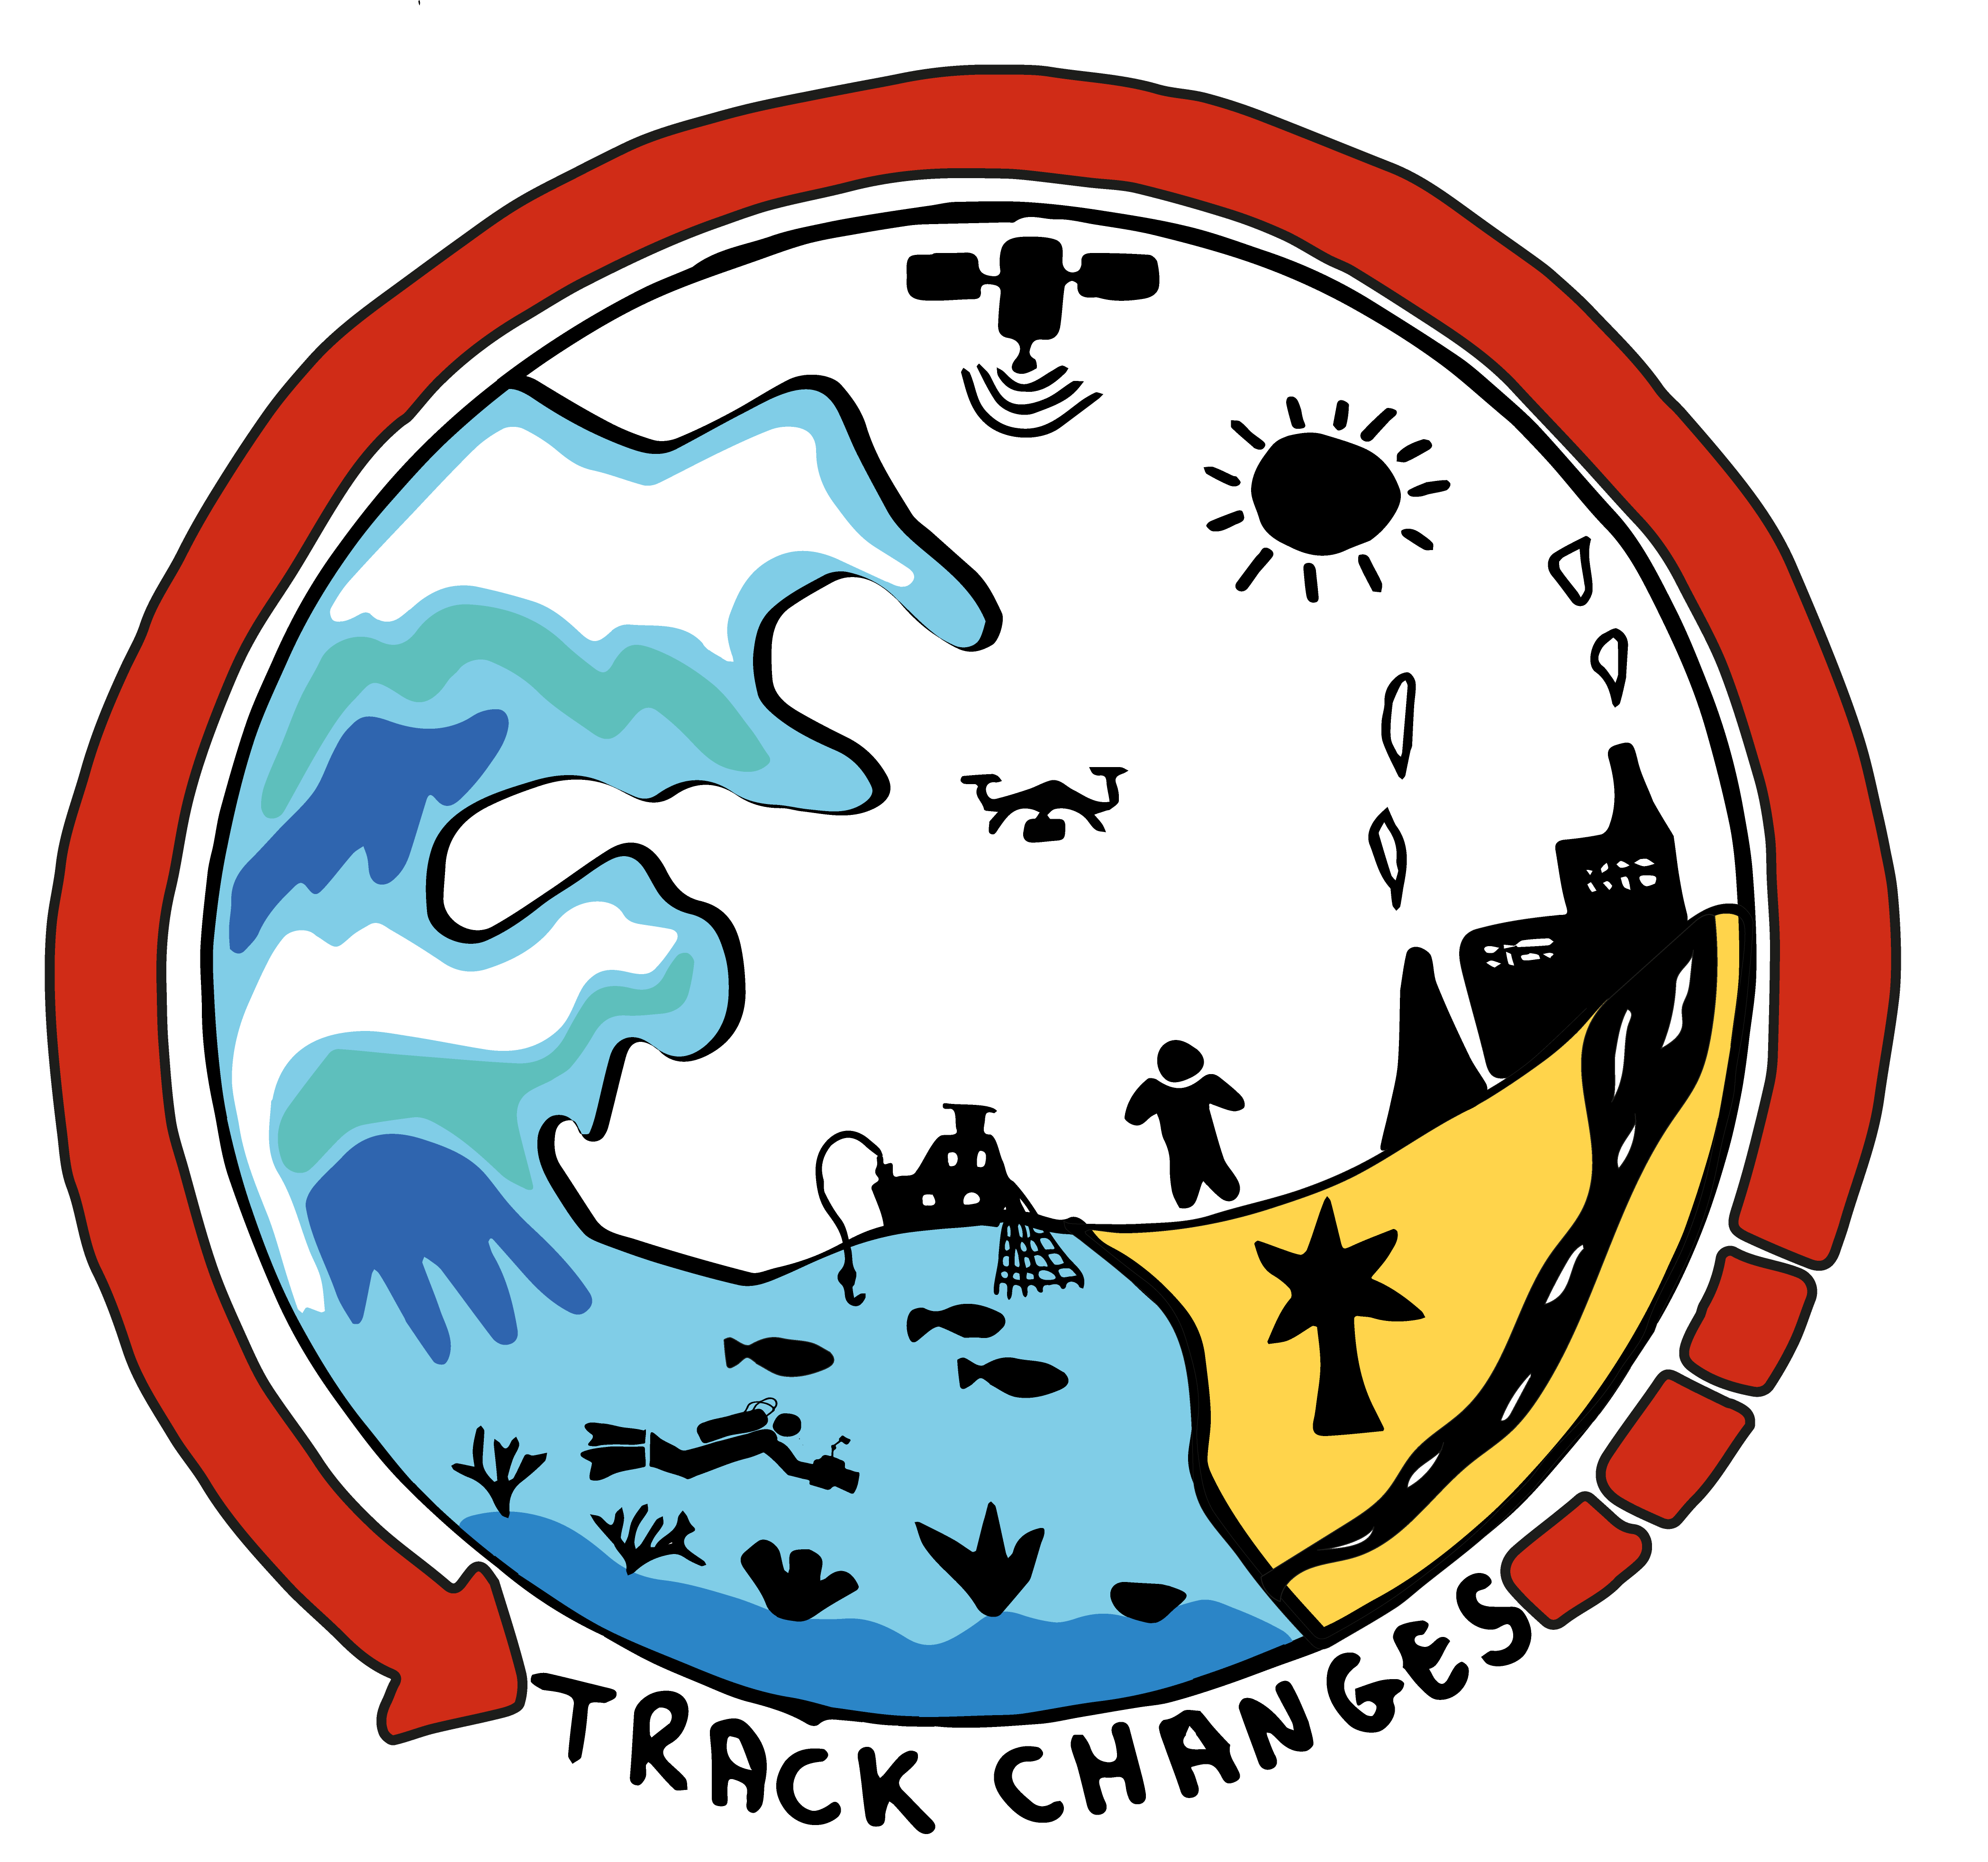 track changes logo V2 (1).png